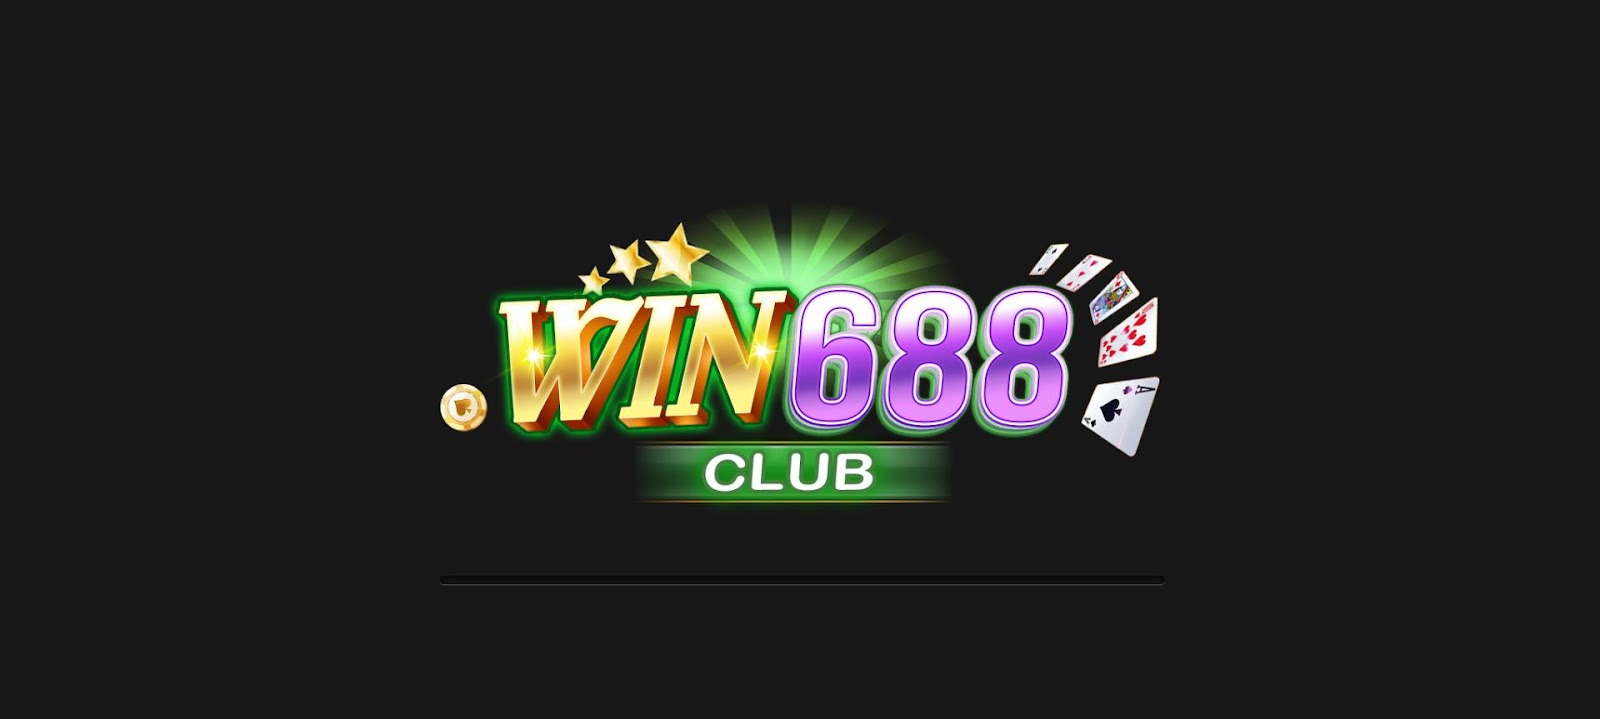 Giới thiệu về cổng game bài Win688 Club